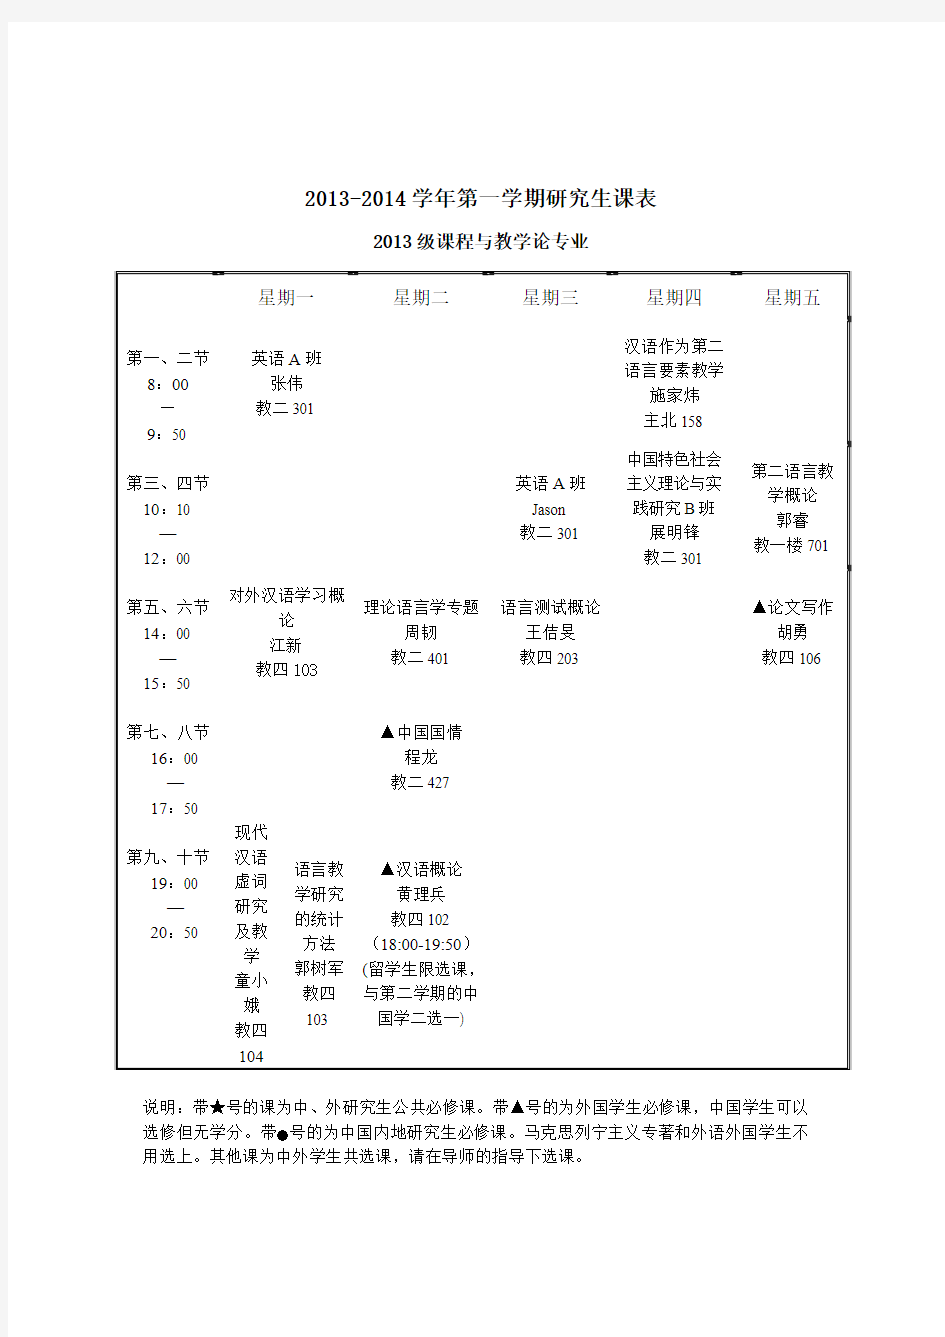 北京语言大学 2013-2014学年研究生课程表(硕士)20130906(最新版)